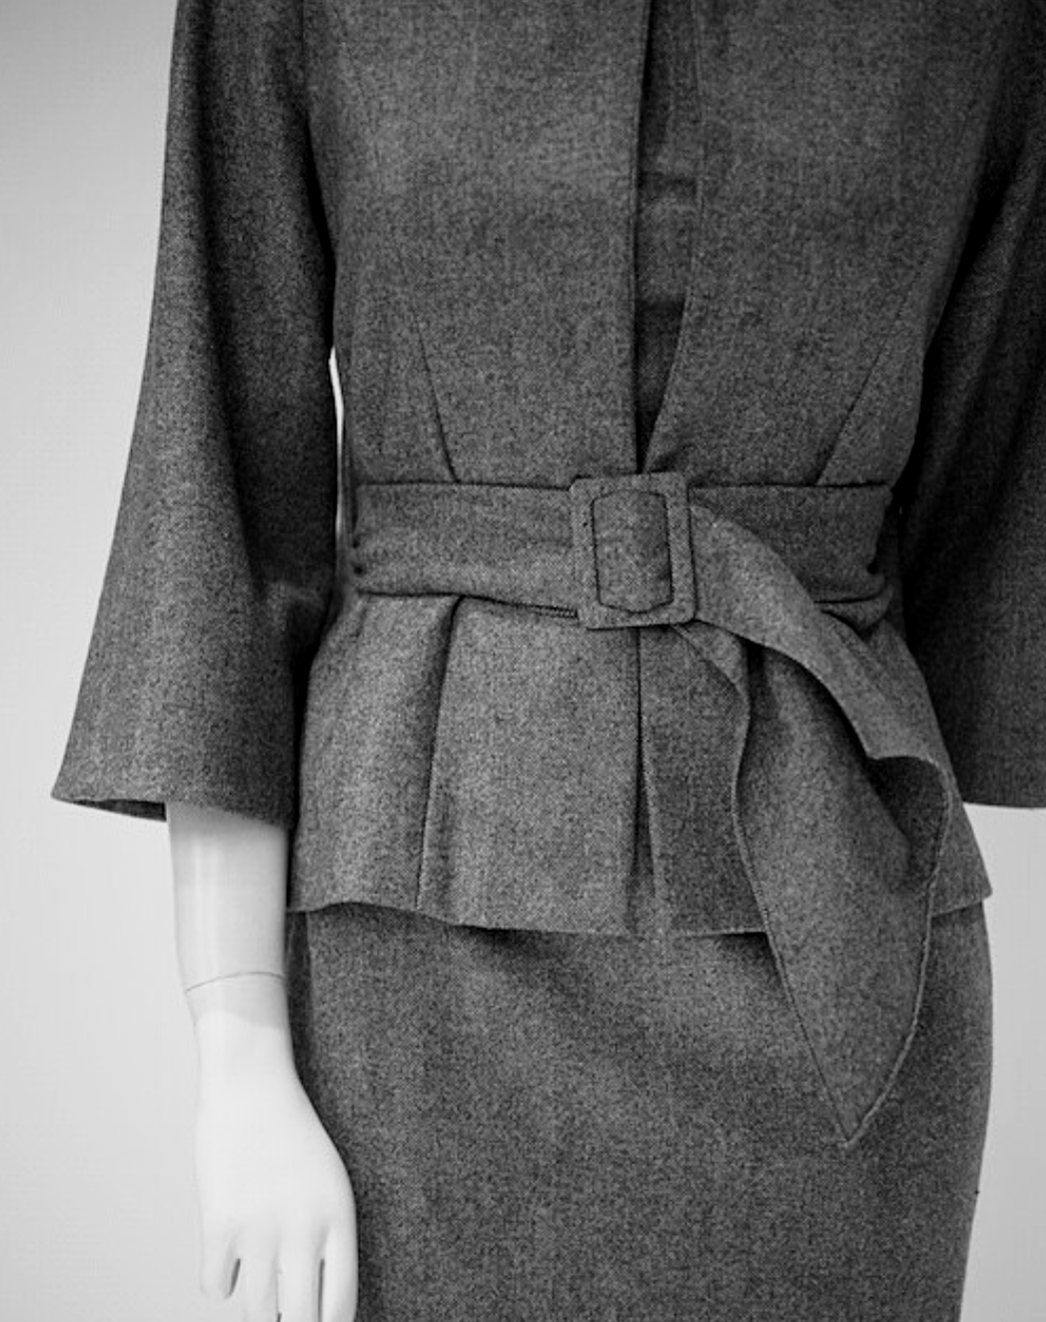 Tailoring belted jacket on mannequin — allison-rodger